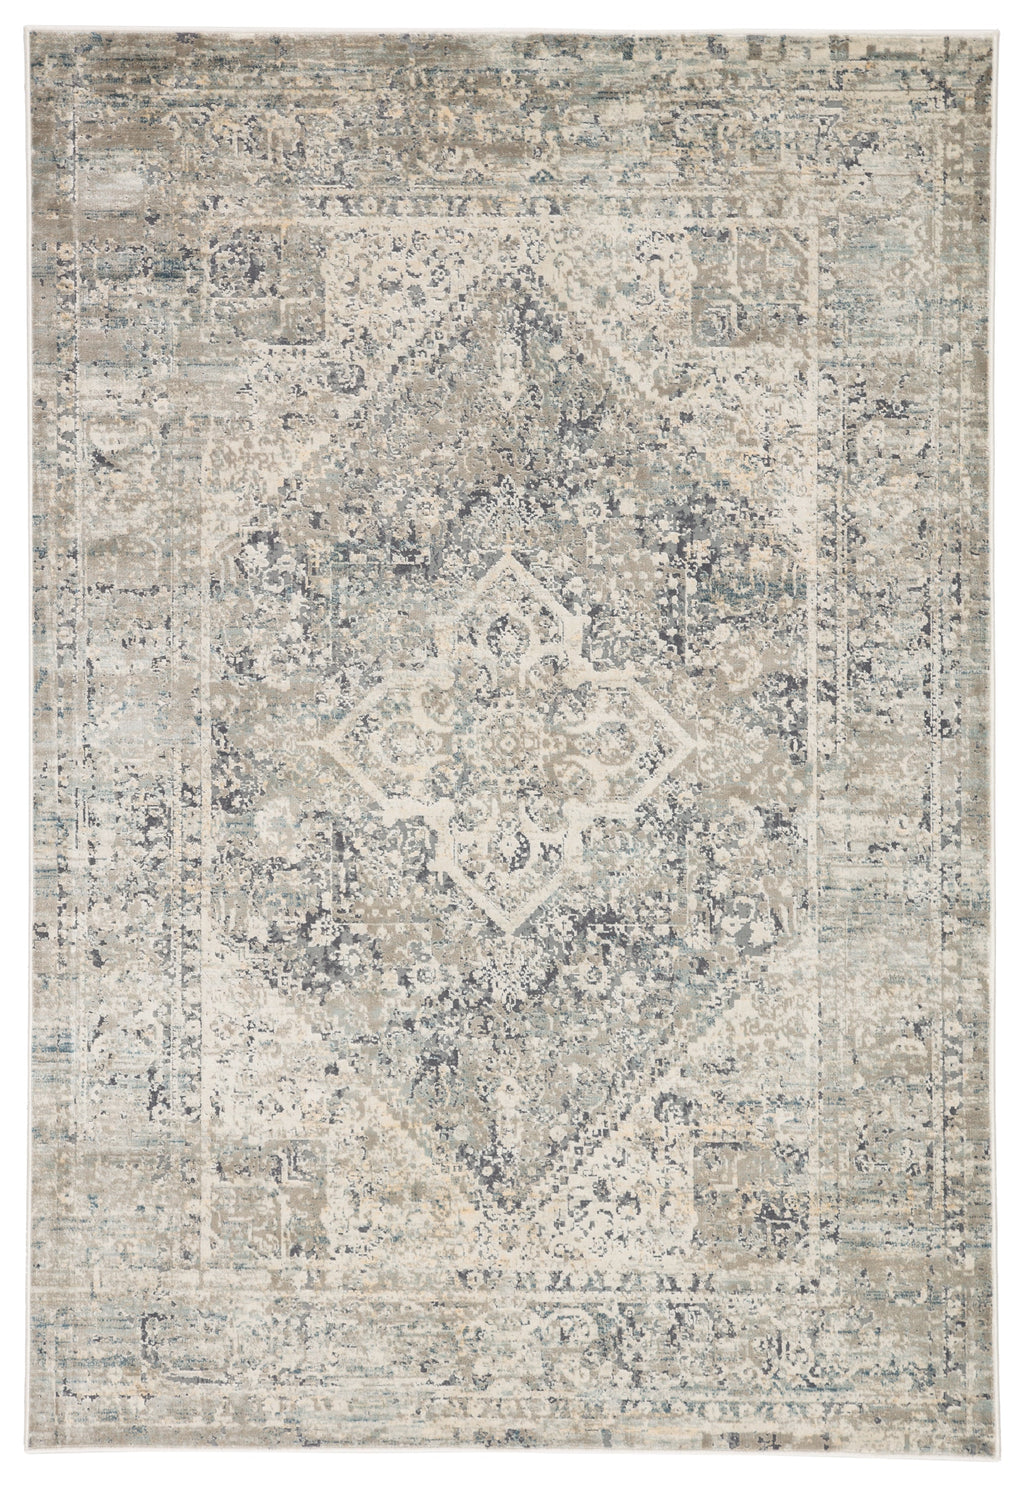 kiev medallion rug in light gray gargoyle design by jaipur 1